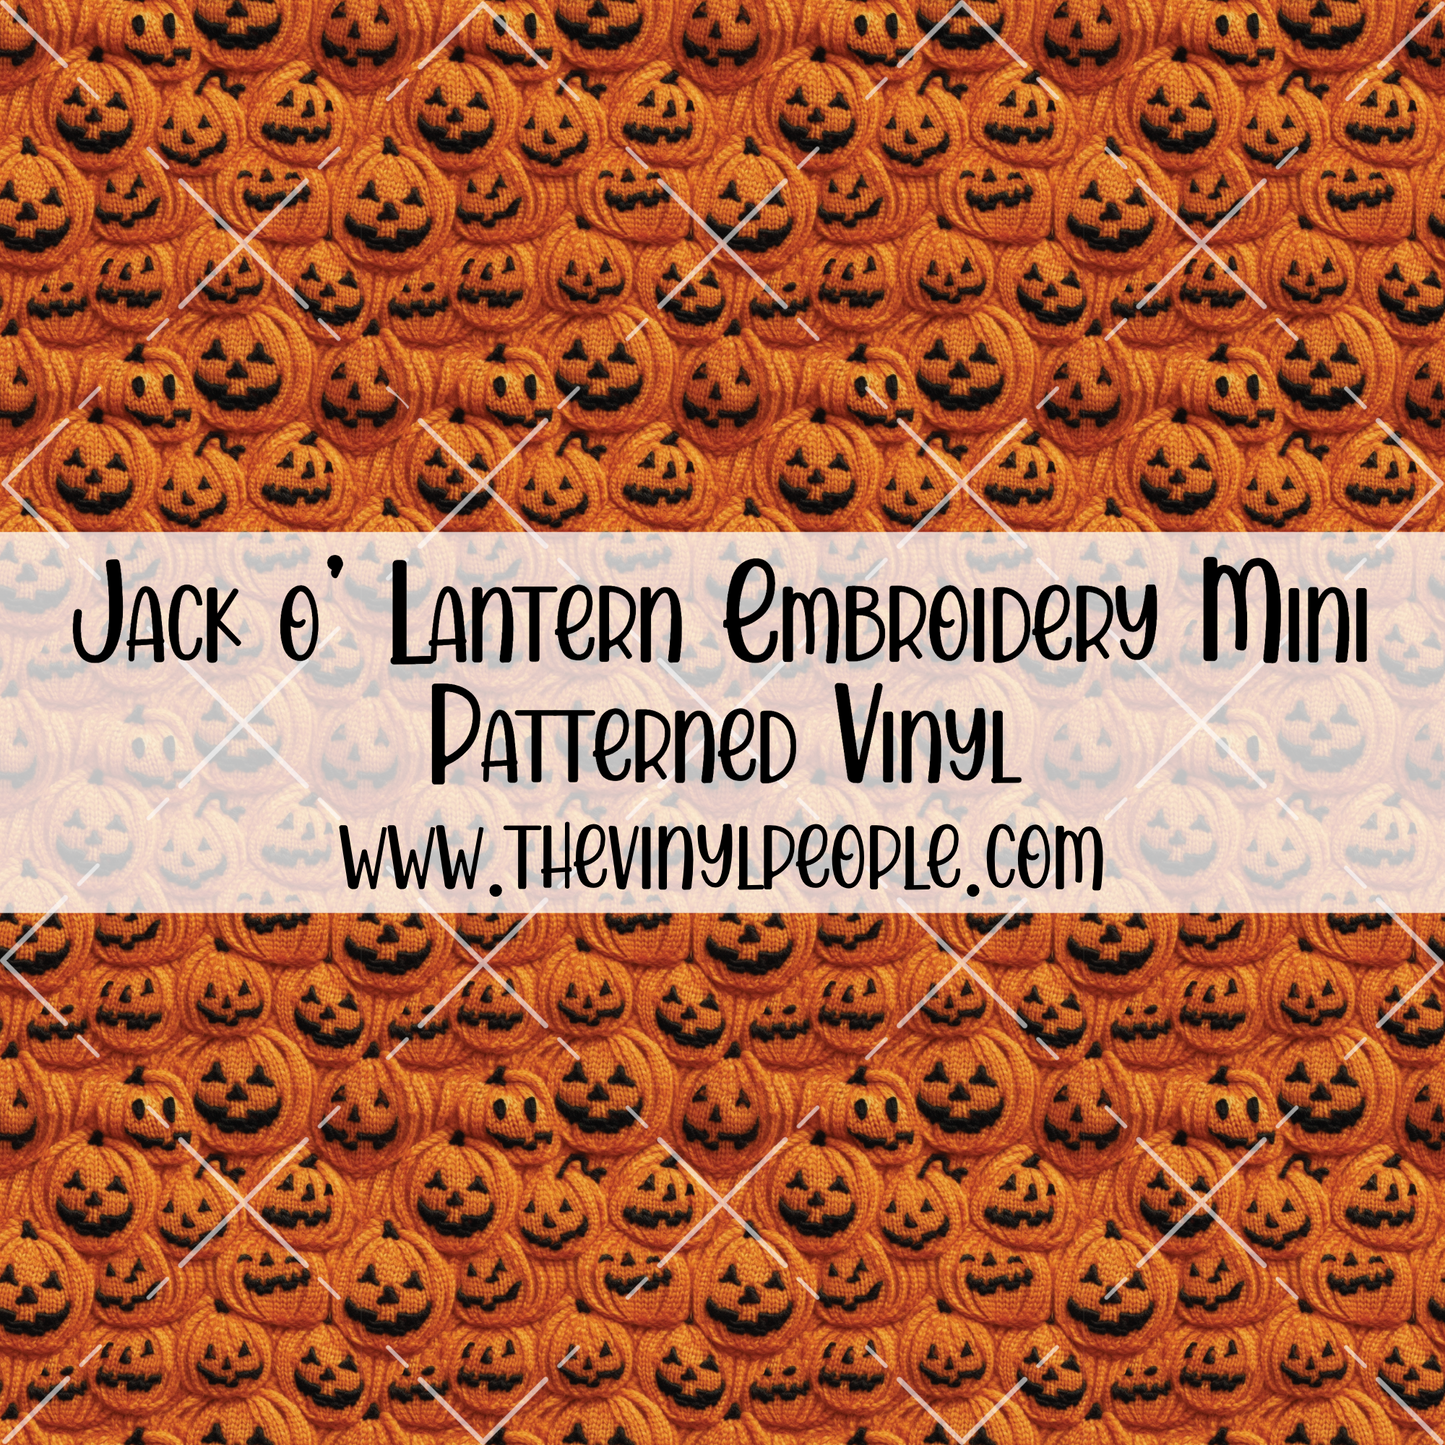 Jack o' Lantern Embroidery Patterned Vinyl